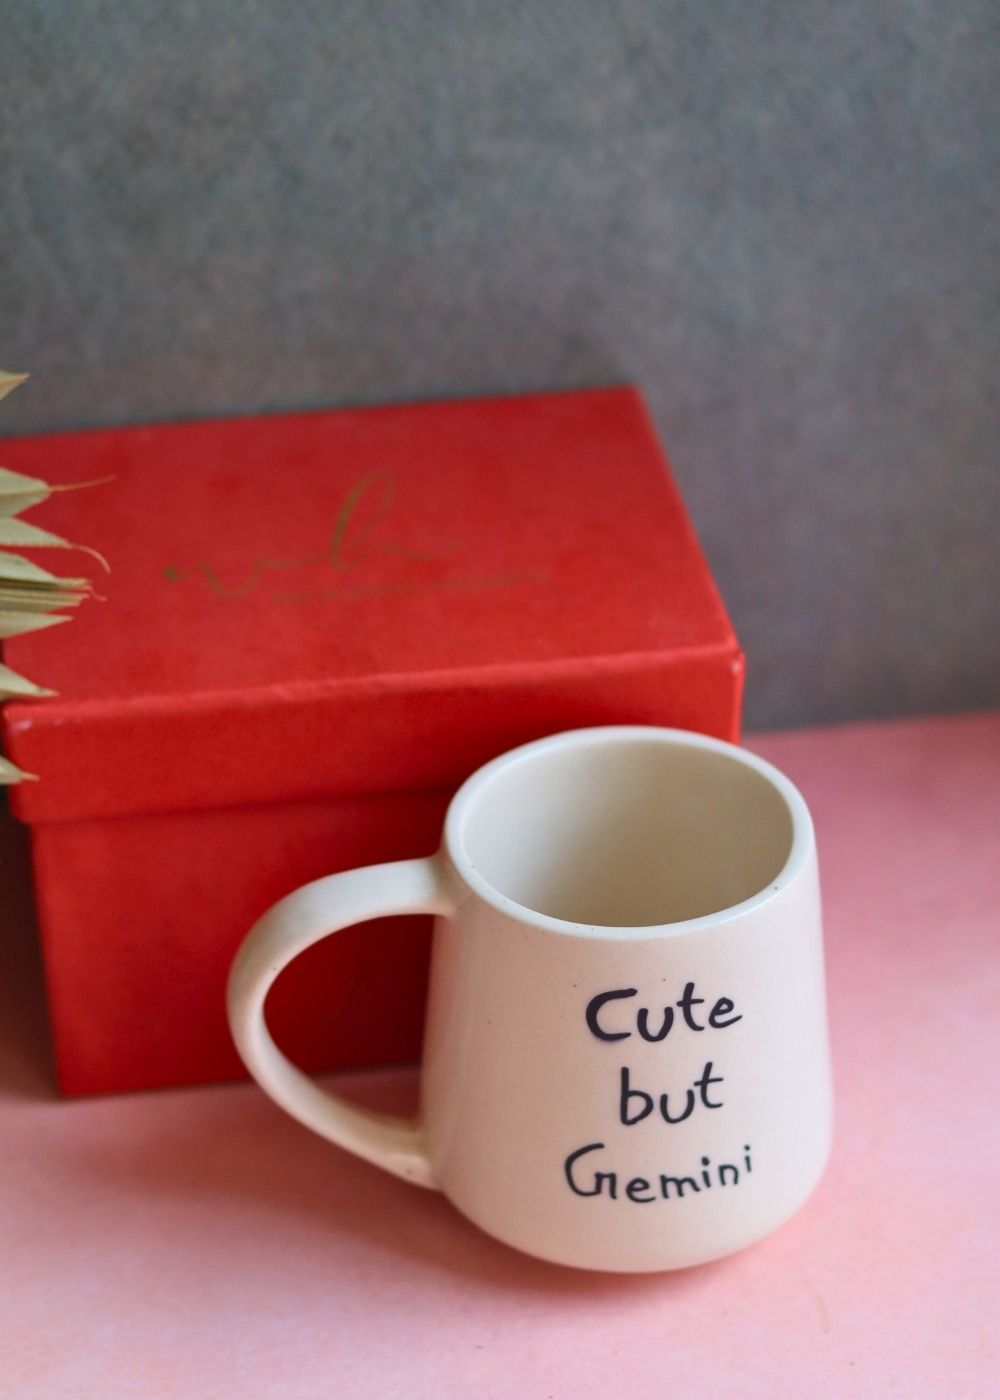 Handmade cute but gemini mug in a gift box